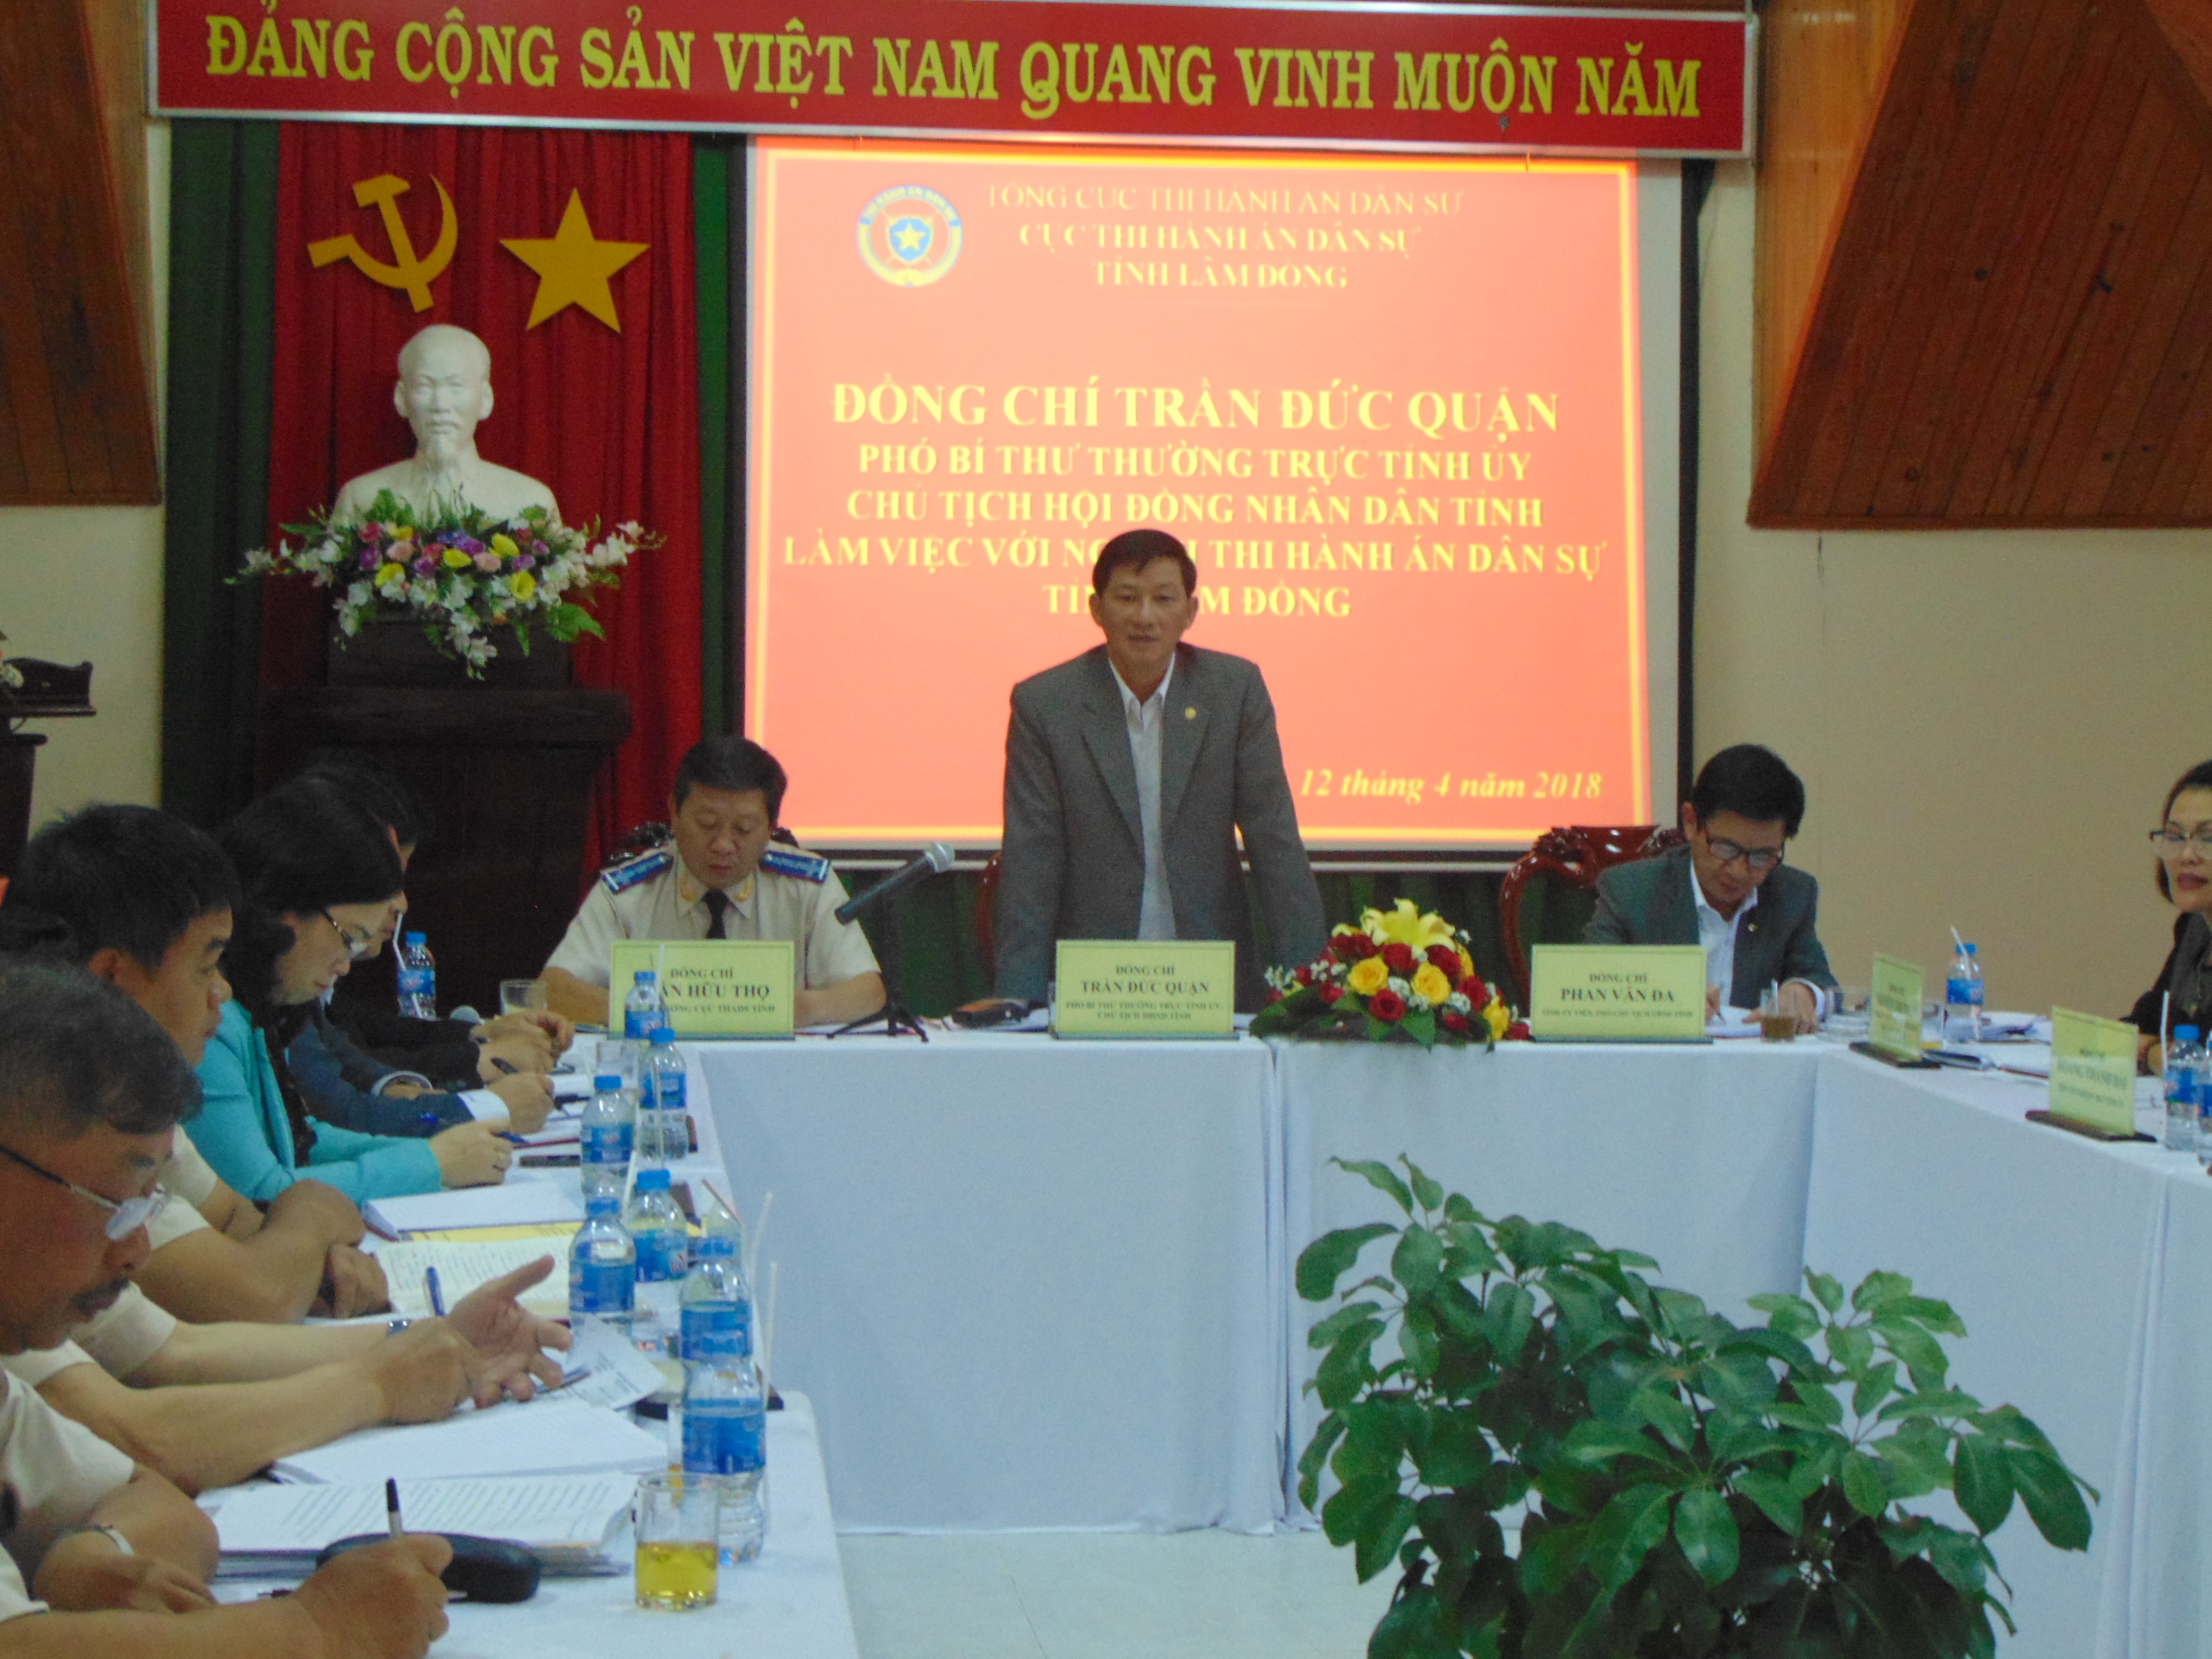 Đồng chí  Trần Đức Quận - Phó Bí thư Thường trực Tỉnh ủy, Chủ tịch HĐND tỉnh  làm việc với Cục THADS tỉnh Lâm Đồng